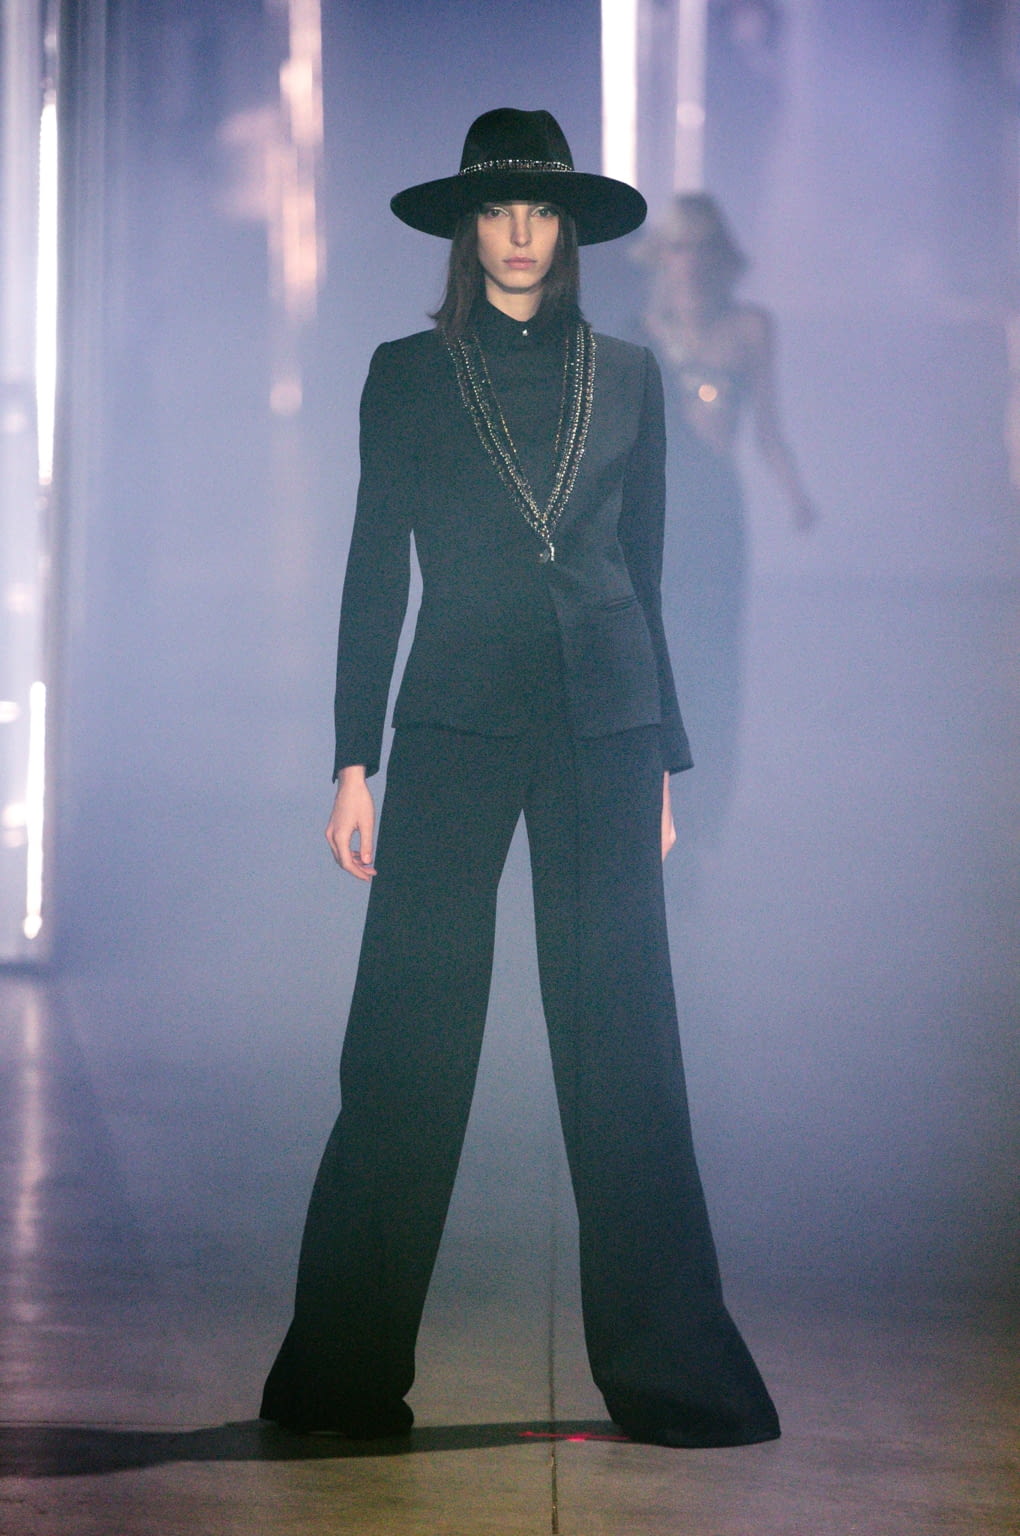 Chanel F/W 16 womenswear #14 - Tagwalk: The Fashion Search Engine